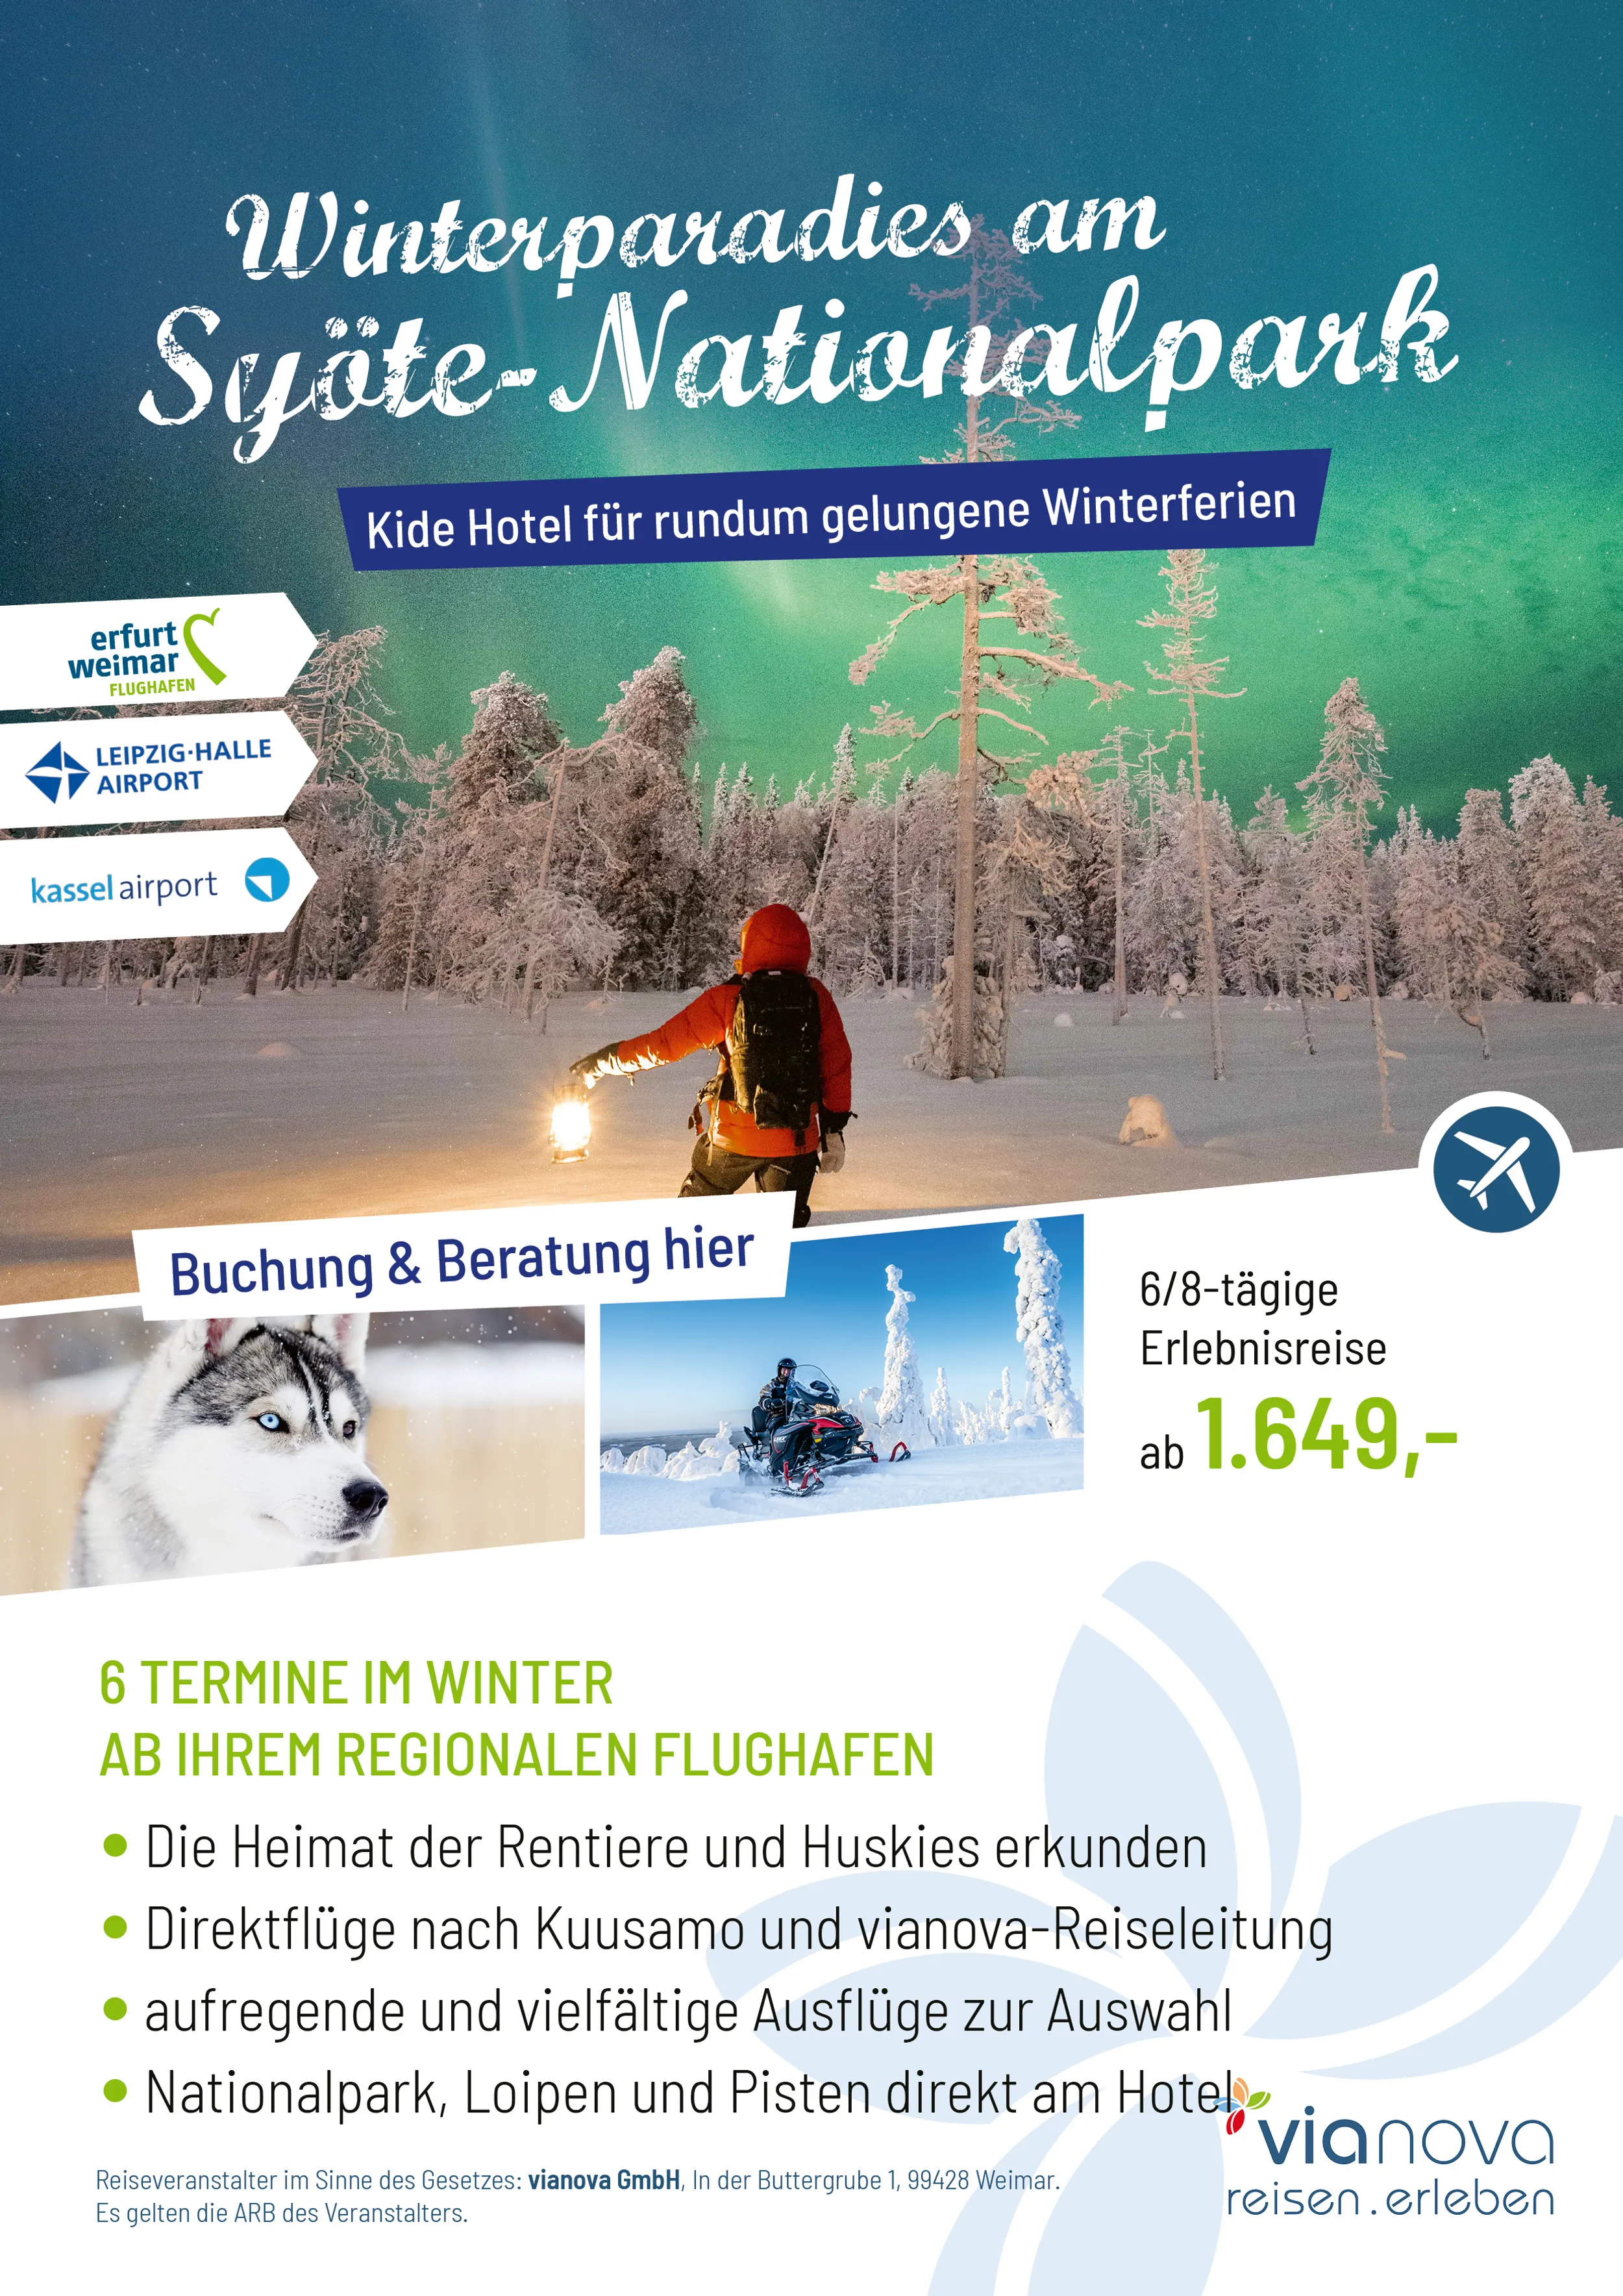 Winterparadies am Syöte Nationalpark ab ERF, LEJ, KSF